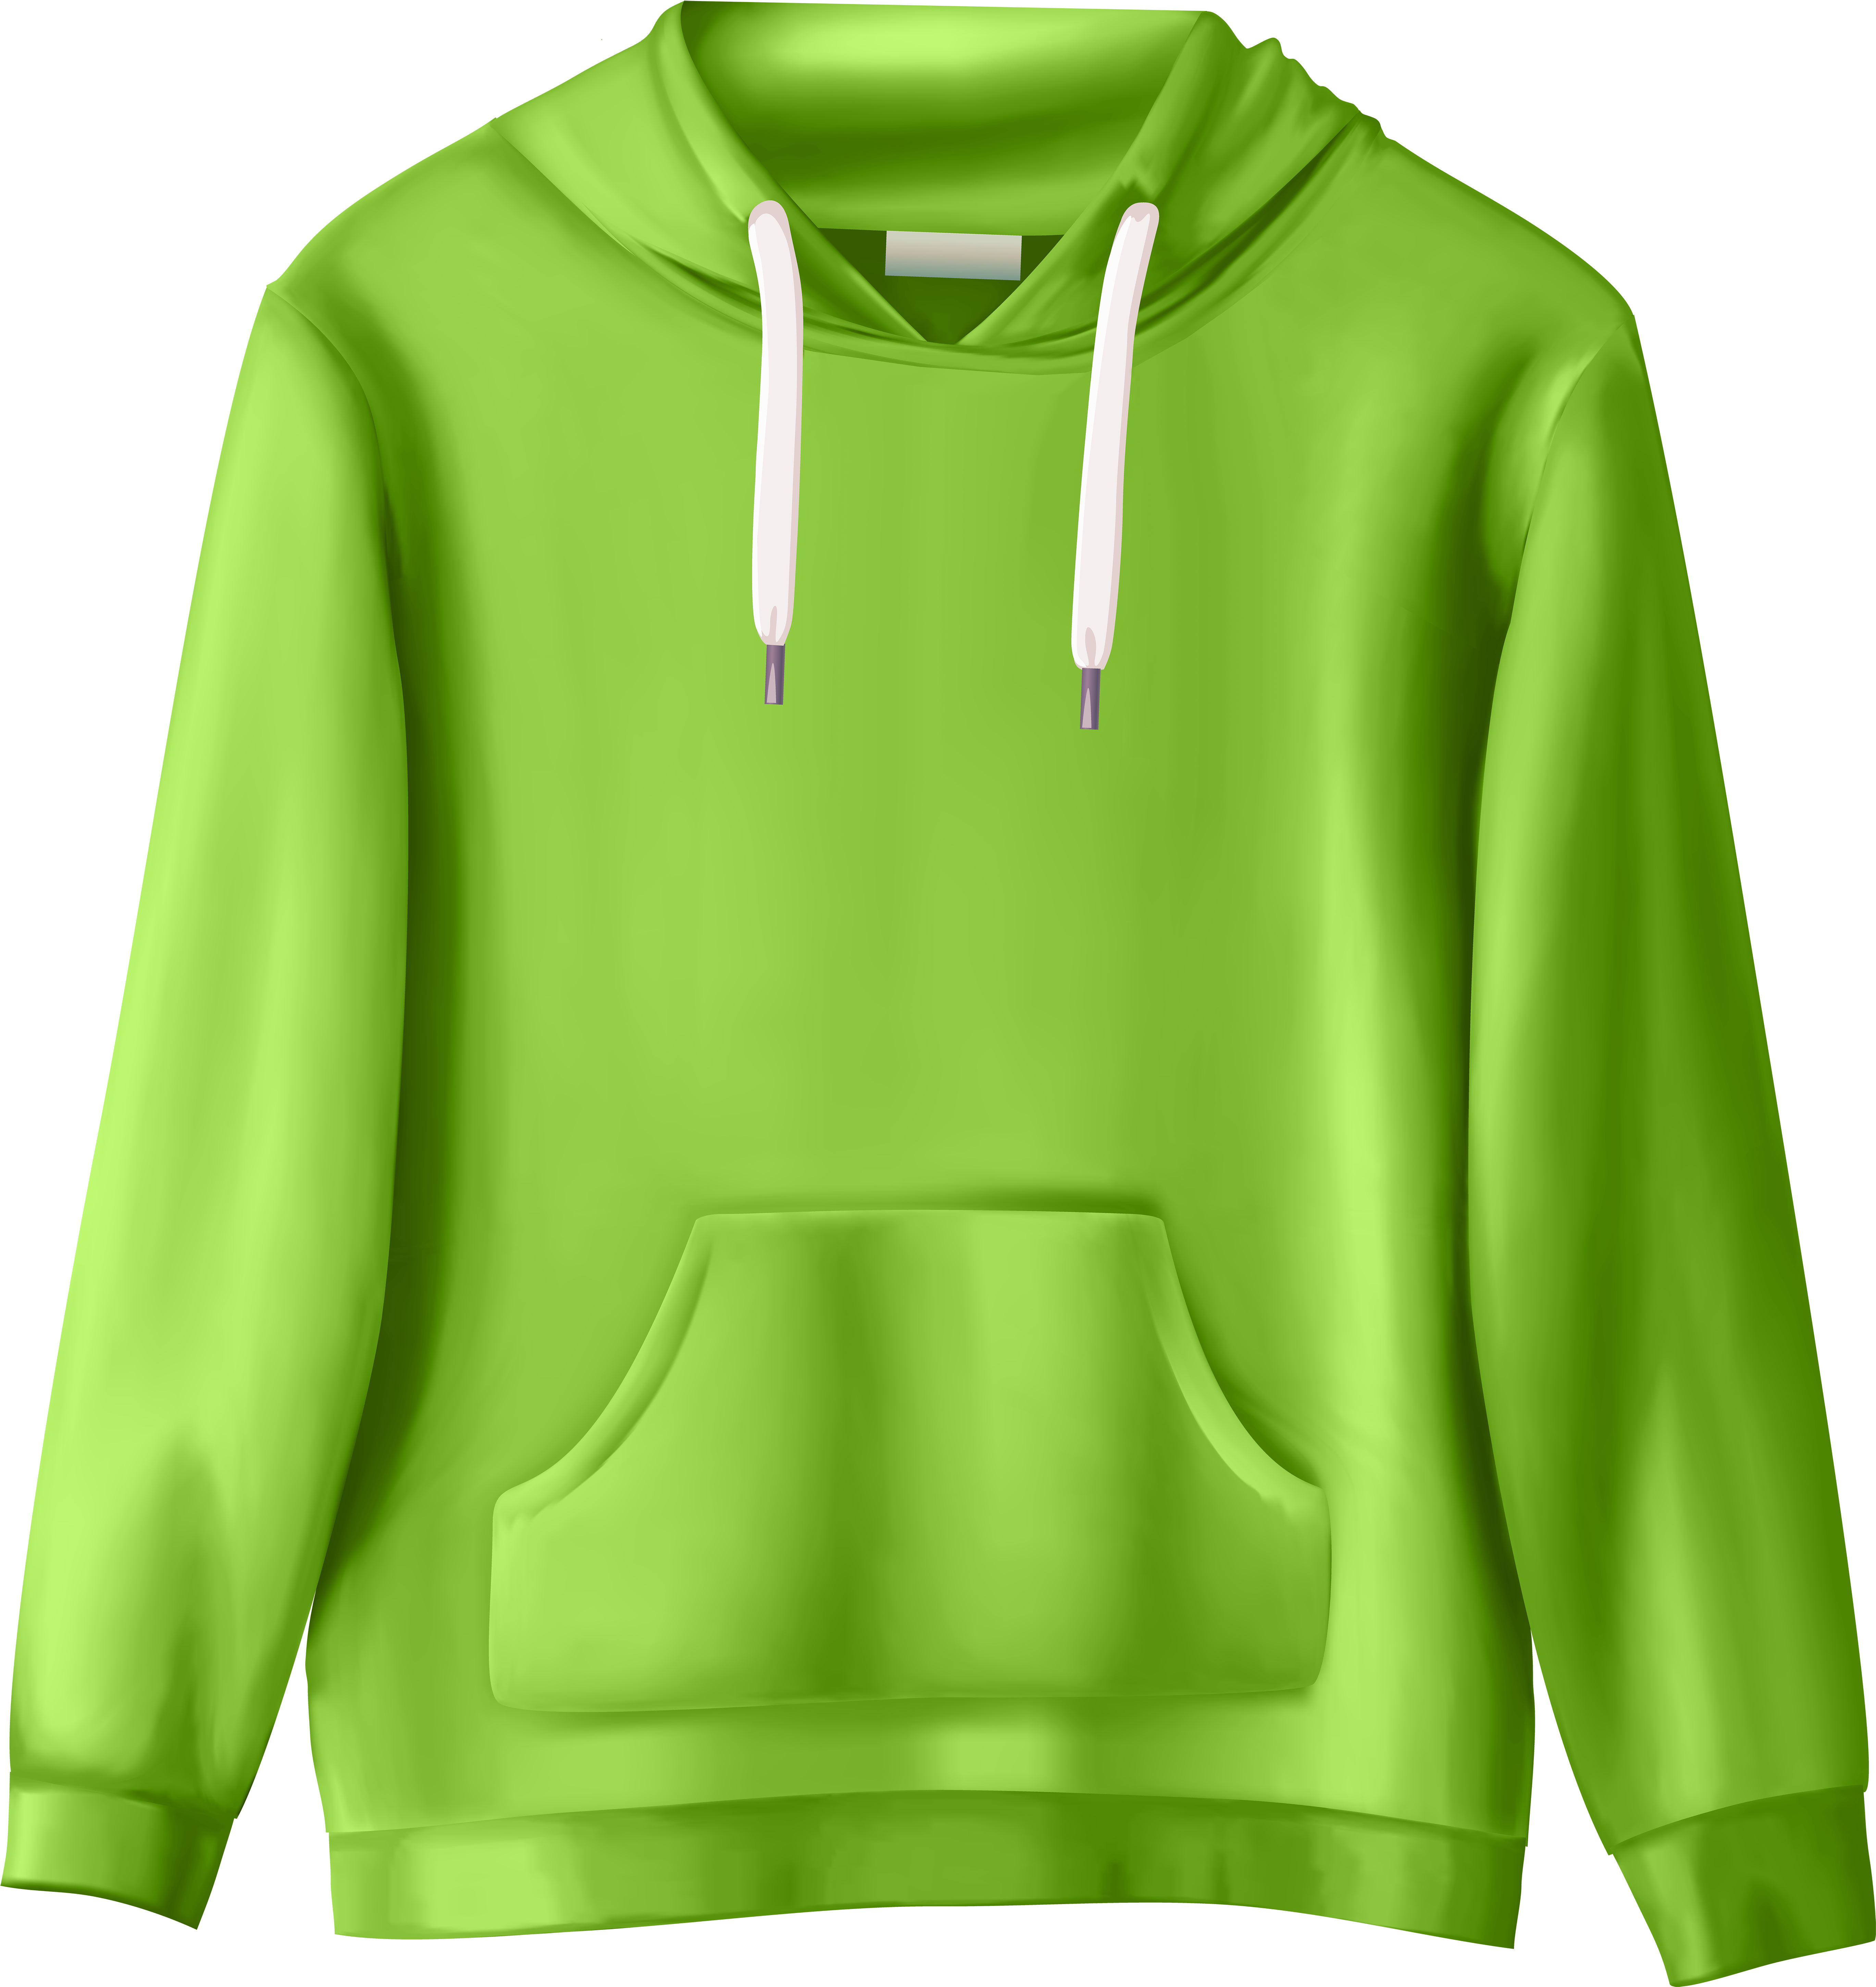 Green Sweatshirt Png Clip Art - Sweatshirt Clipart (467x500), Png Download